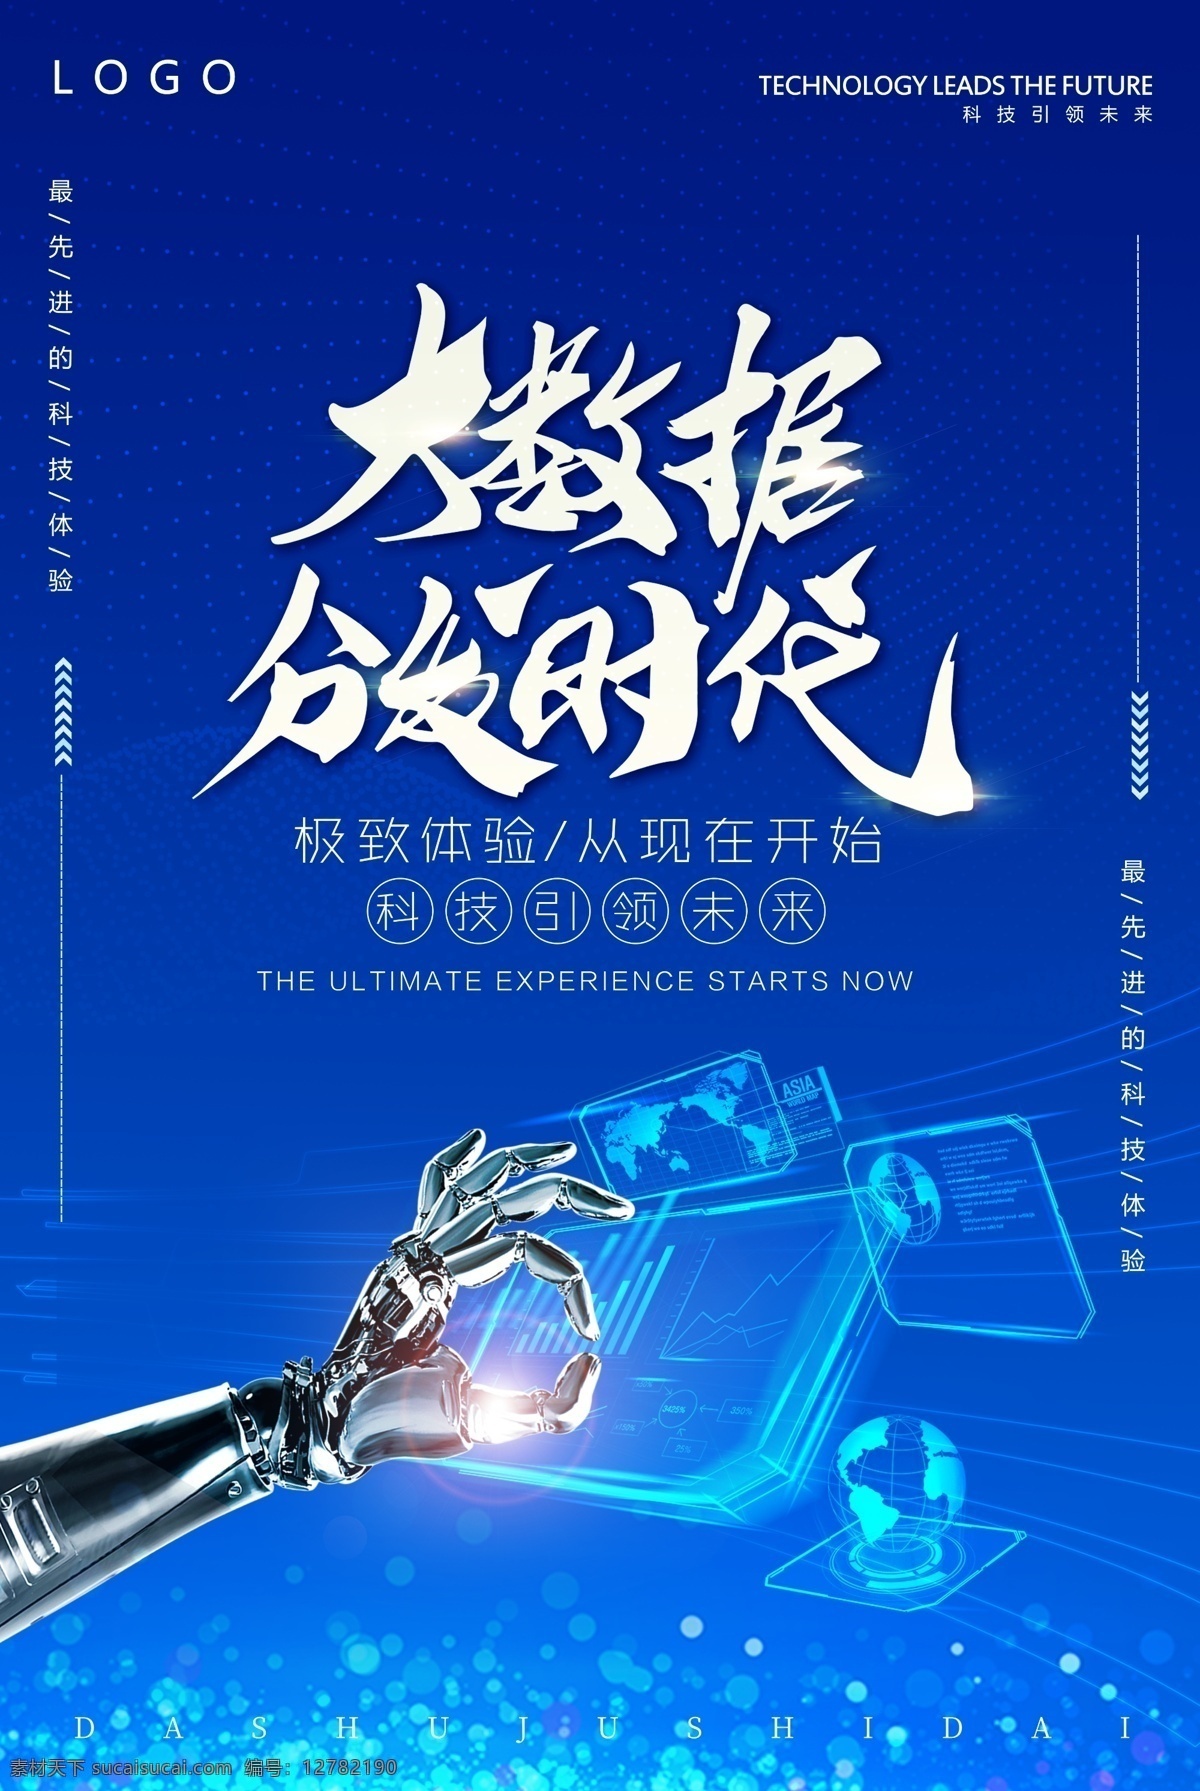 大数据 分发时代 科技 蓝色科技背景 科技北京 蓝色 机械手臂素材 线条电脑 计算器